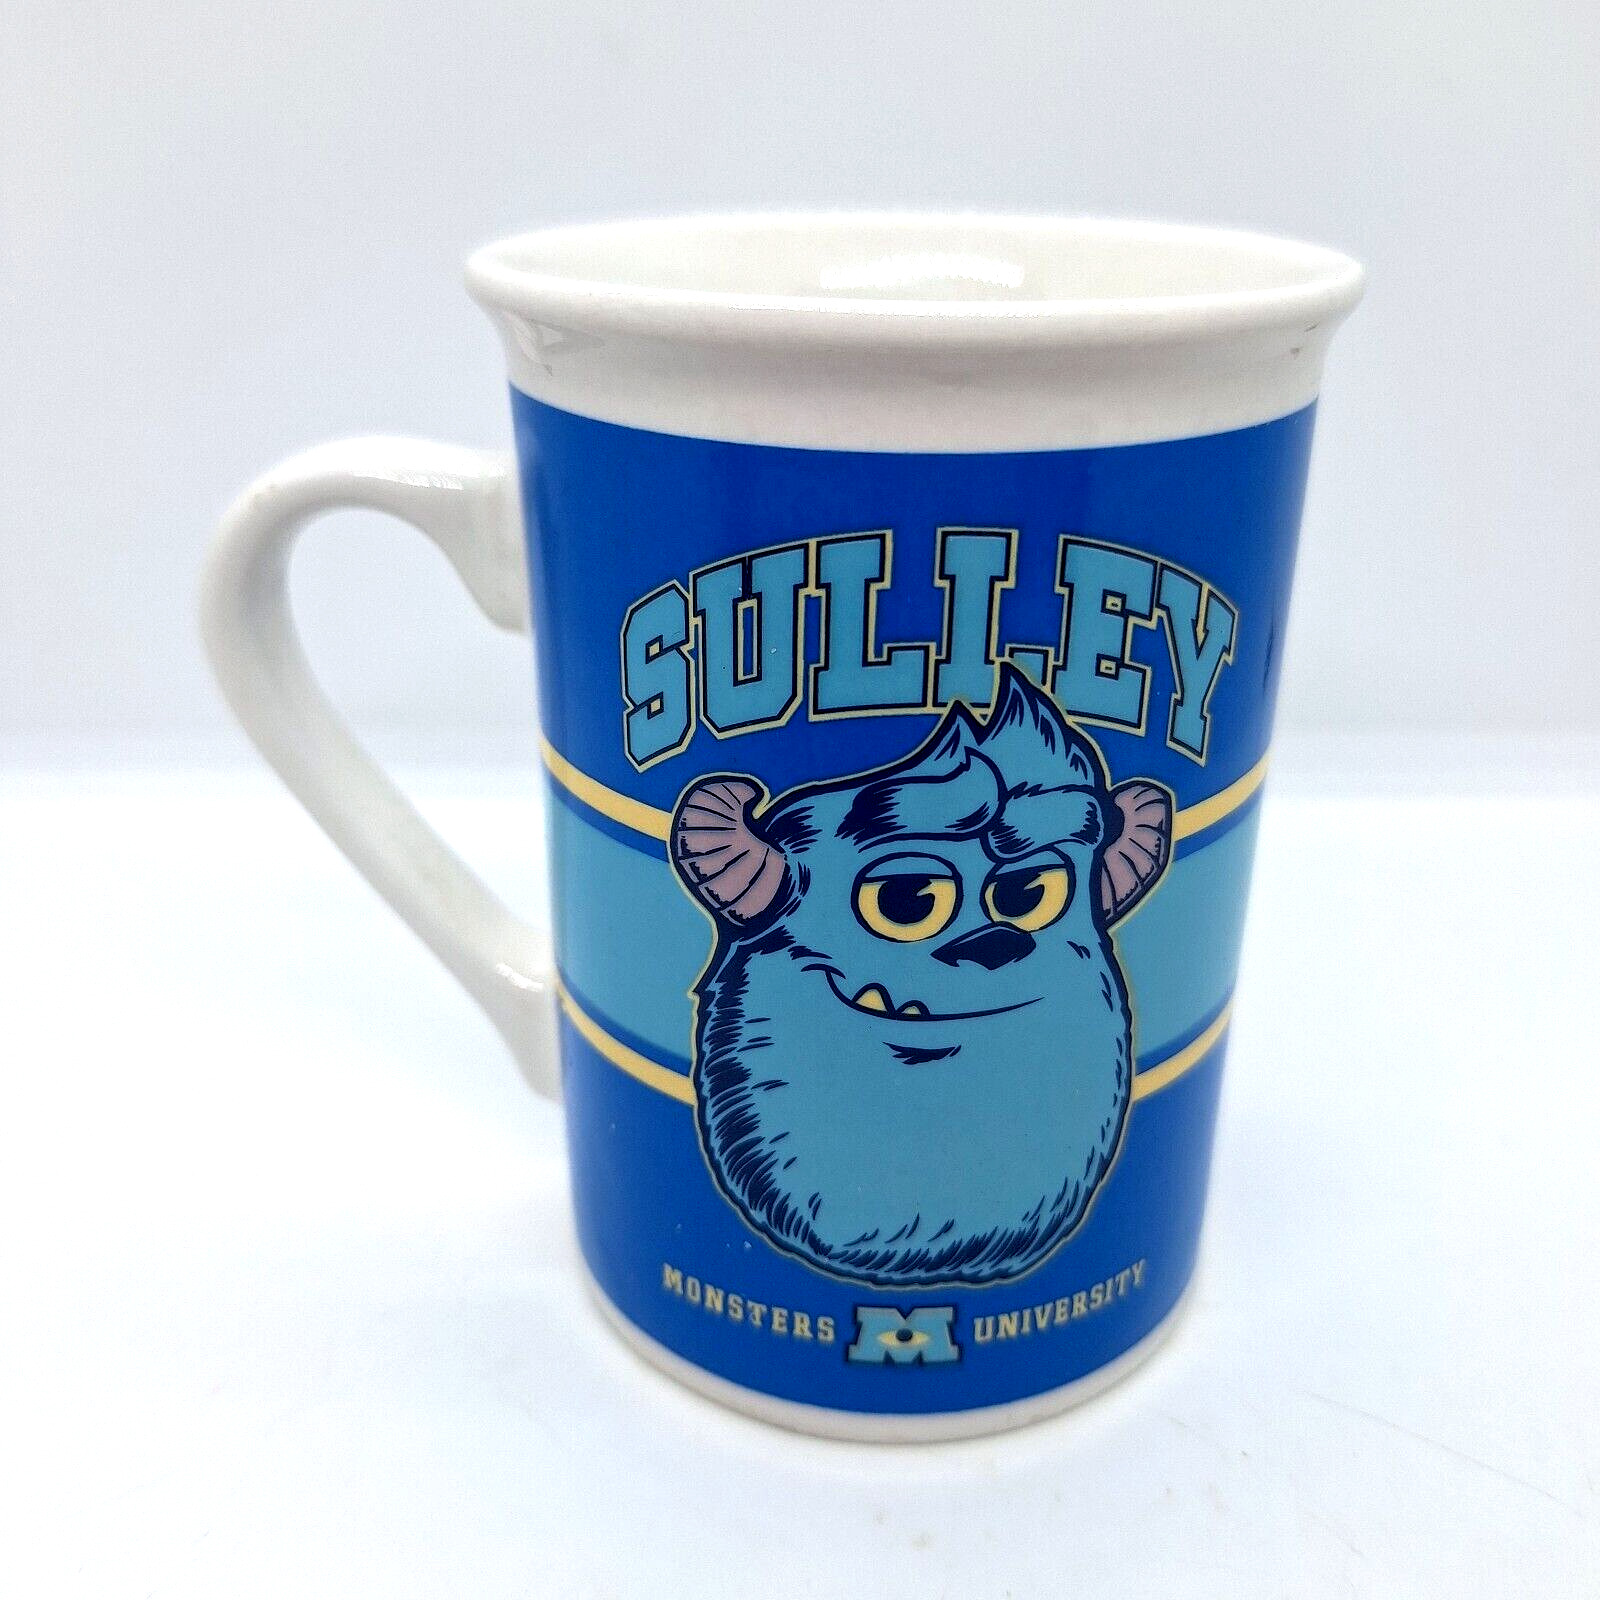 Monsters University Mug Coffee Cup, Disney Pixar Mike Sulley Collectible Tea Mug